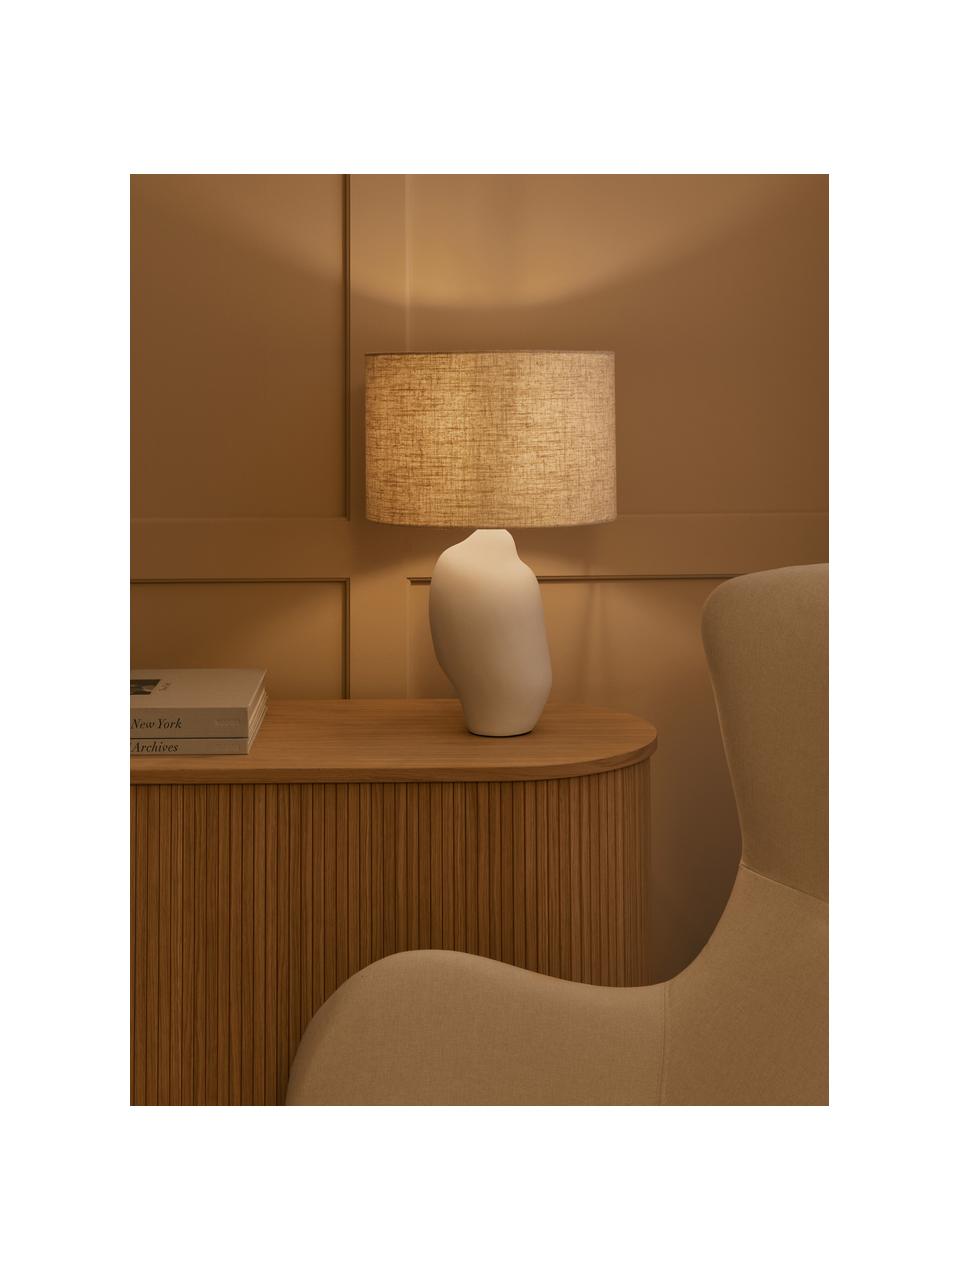 Grote keramische tafellamp Colett in organisch vorm, Lampenkap: linnenmix, Lampvoet: keramiek, Beige, wit, Ø 35 x H 53 cm